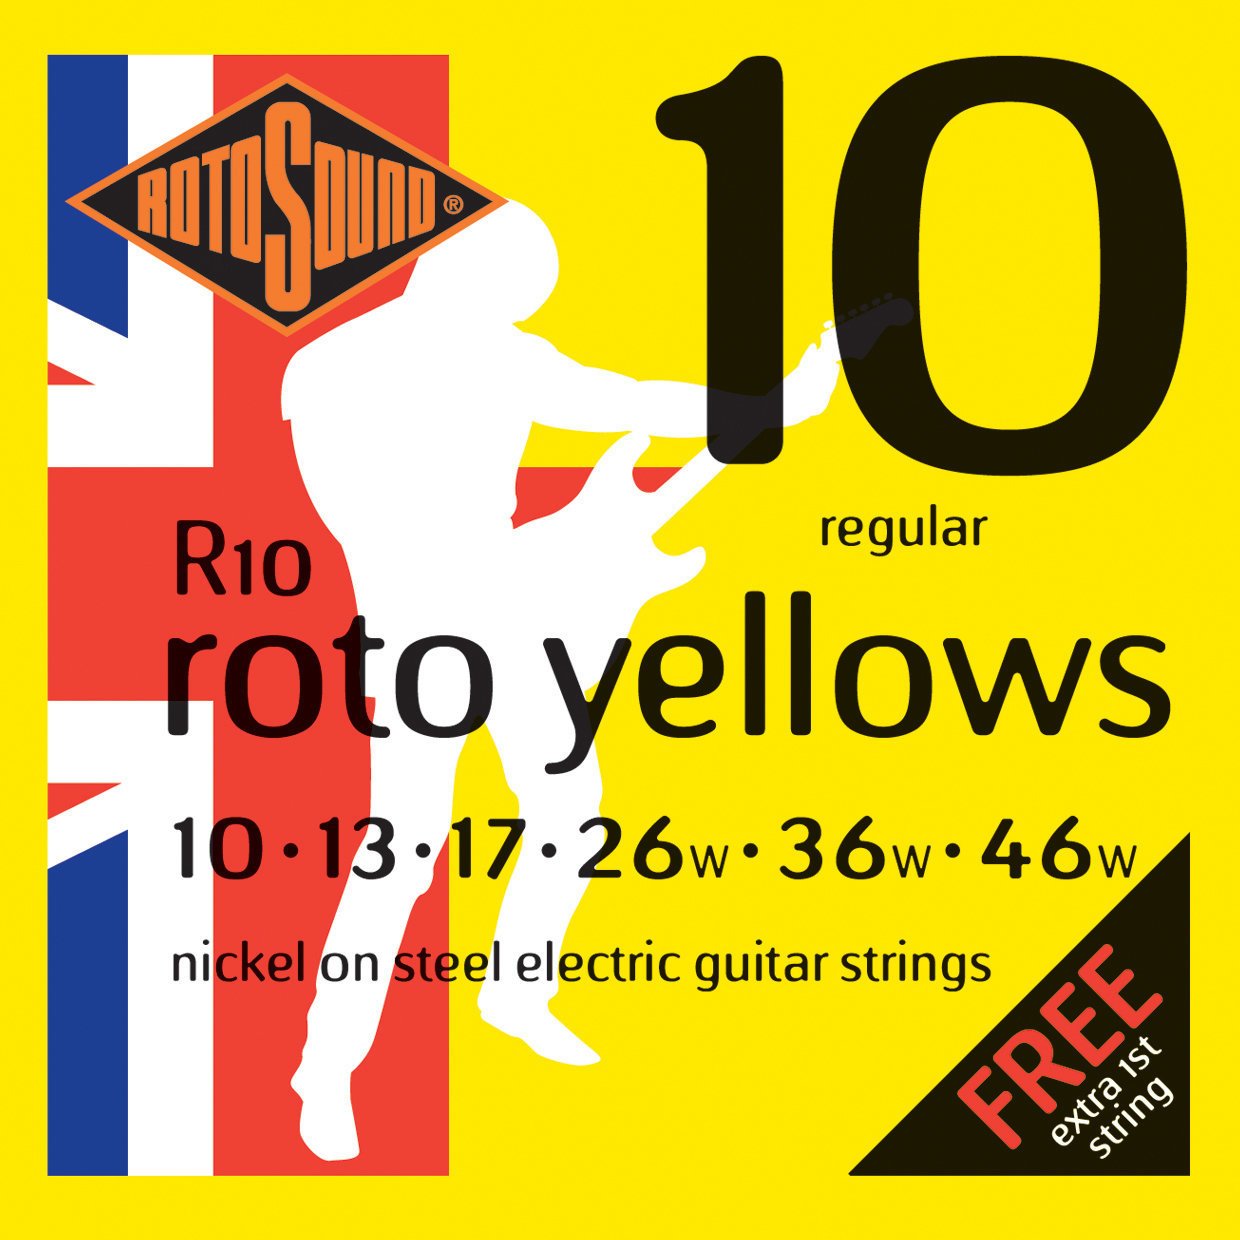 Struny pre elektrickú gitaru Rotosound R10